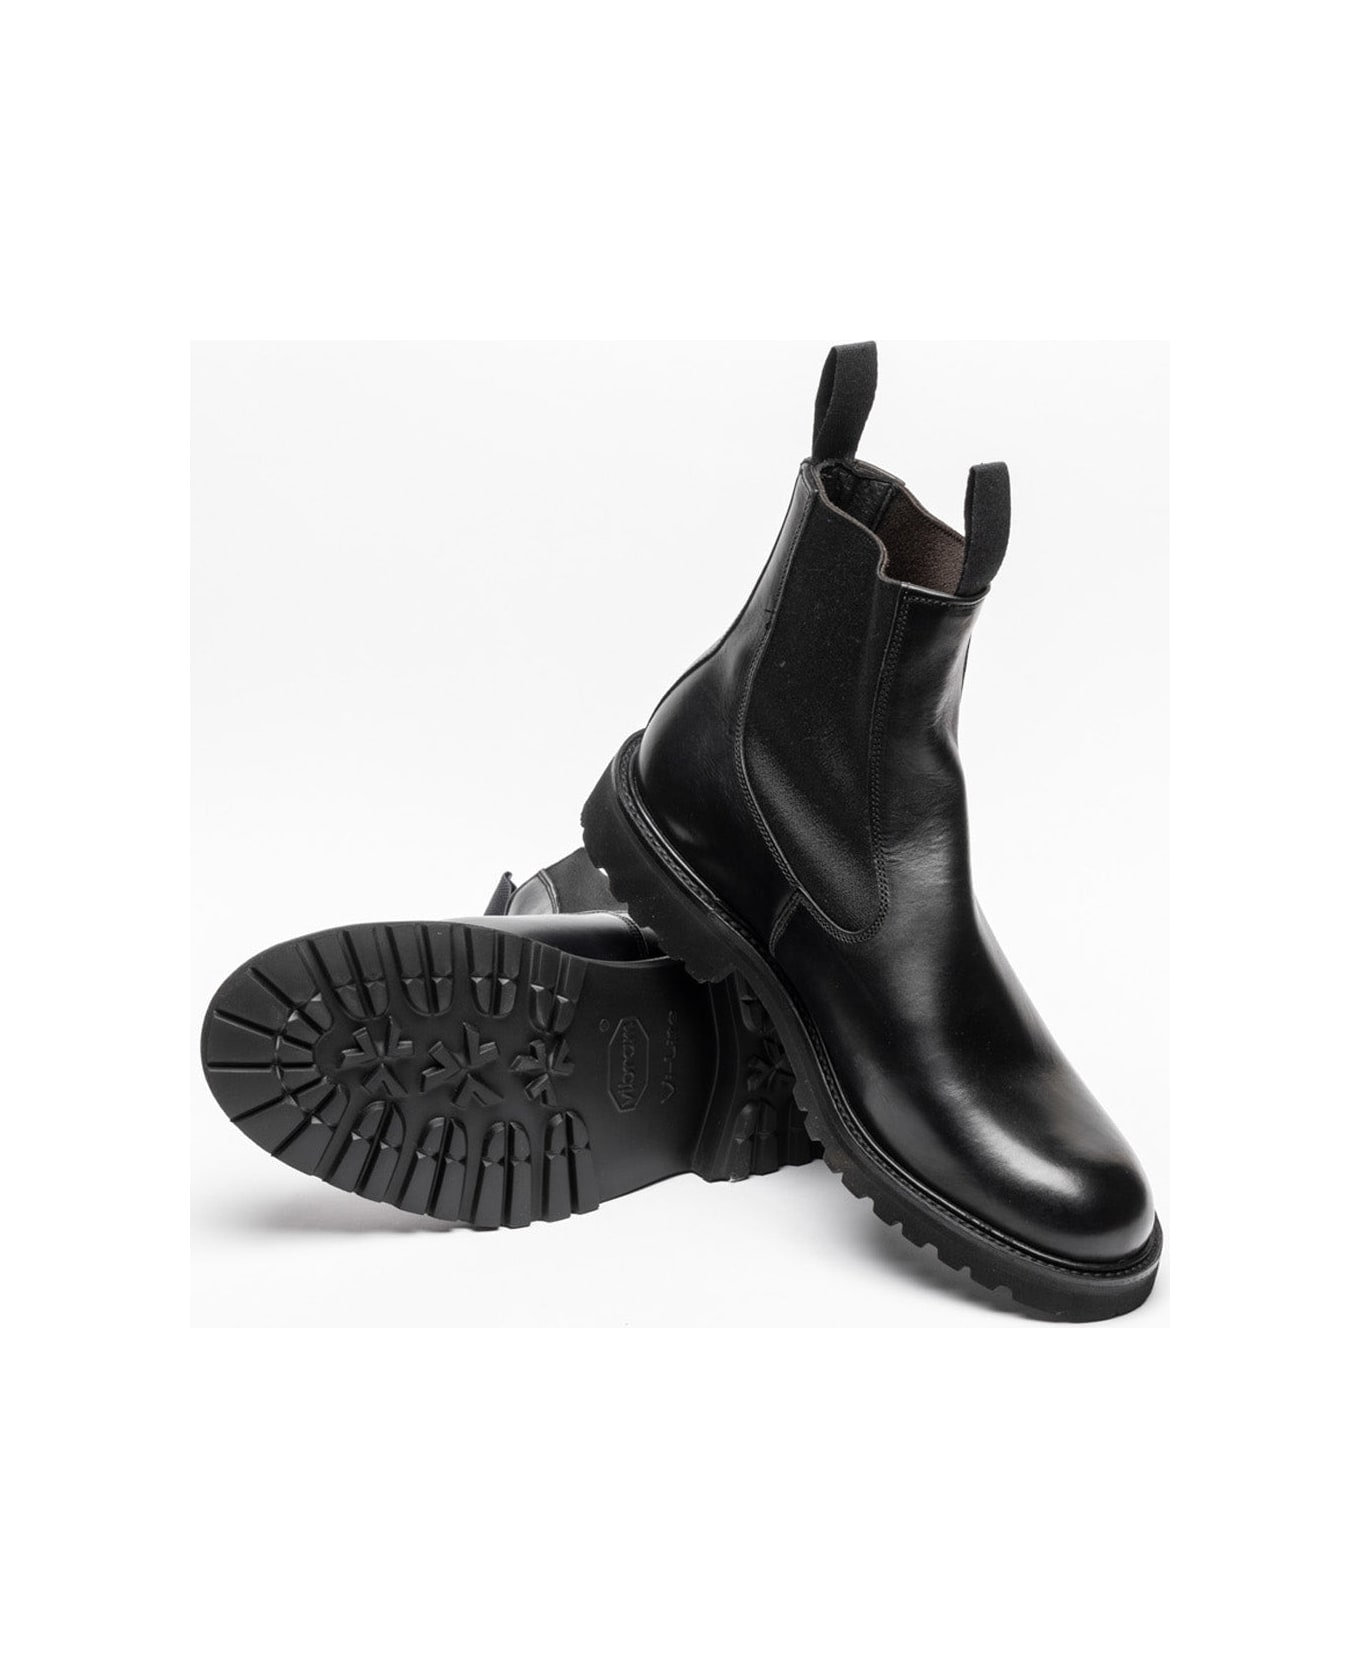 Tricker's Black Olivvia Calf Chelsea Boots - Nero ブーツ